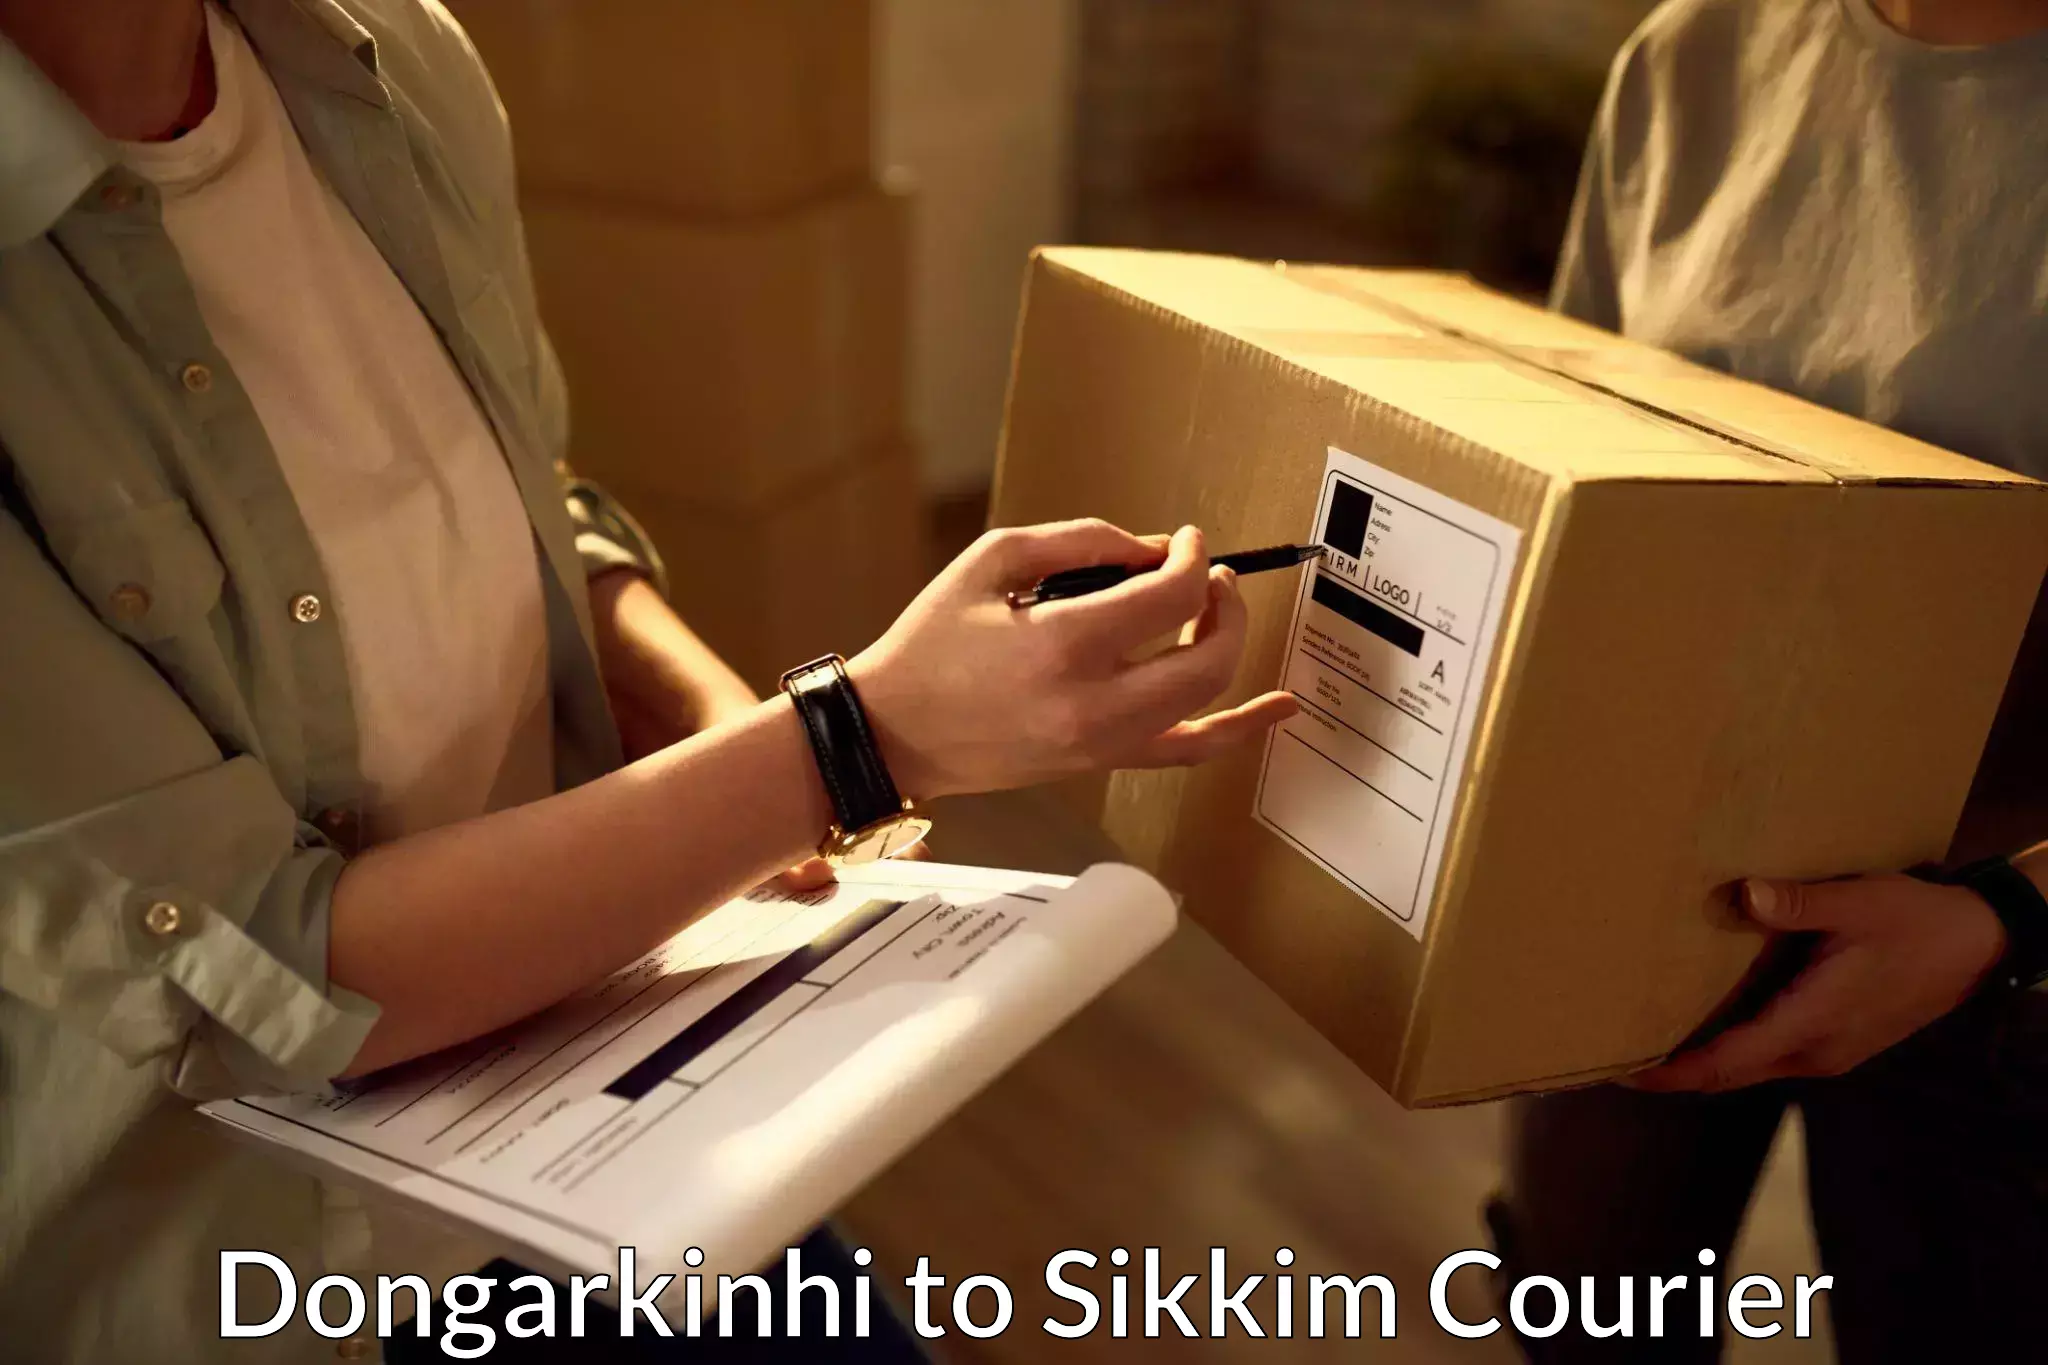 Doorstep delivery service Dongarkinhi to Sikkim